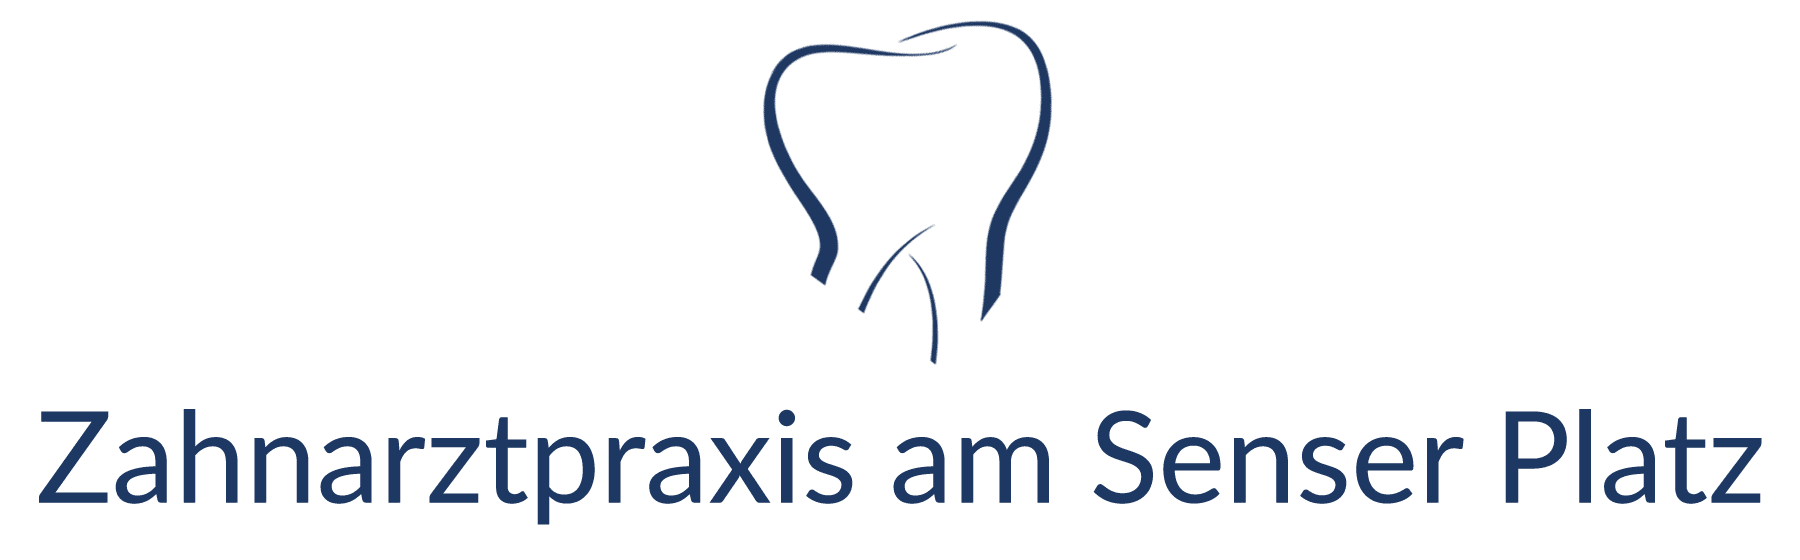 Zahnarzt Lörrach, Zahnarztpraxis am Senser Platz, Logo